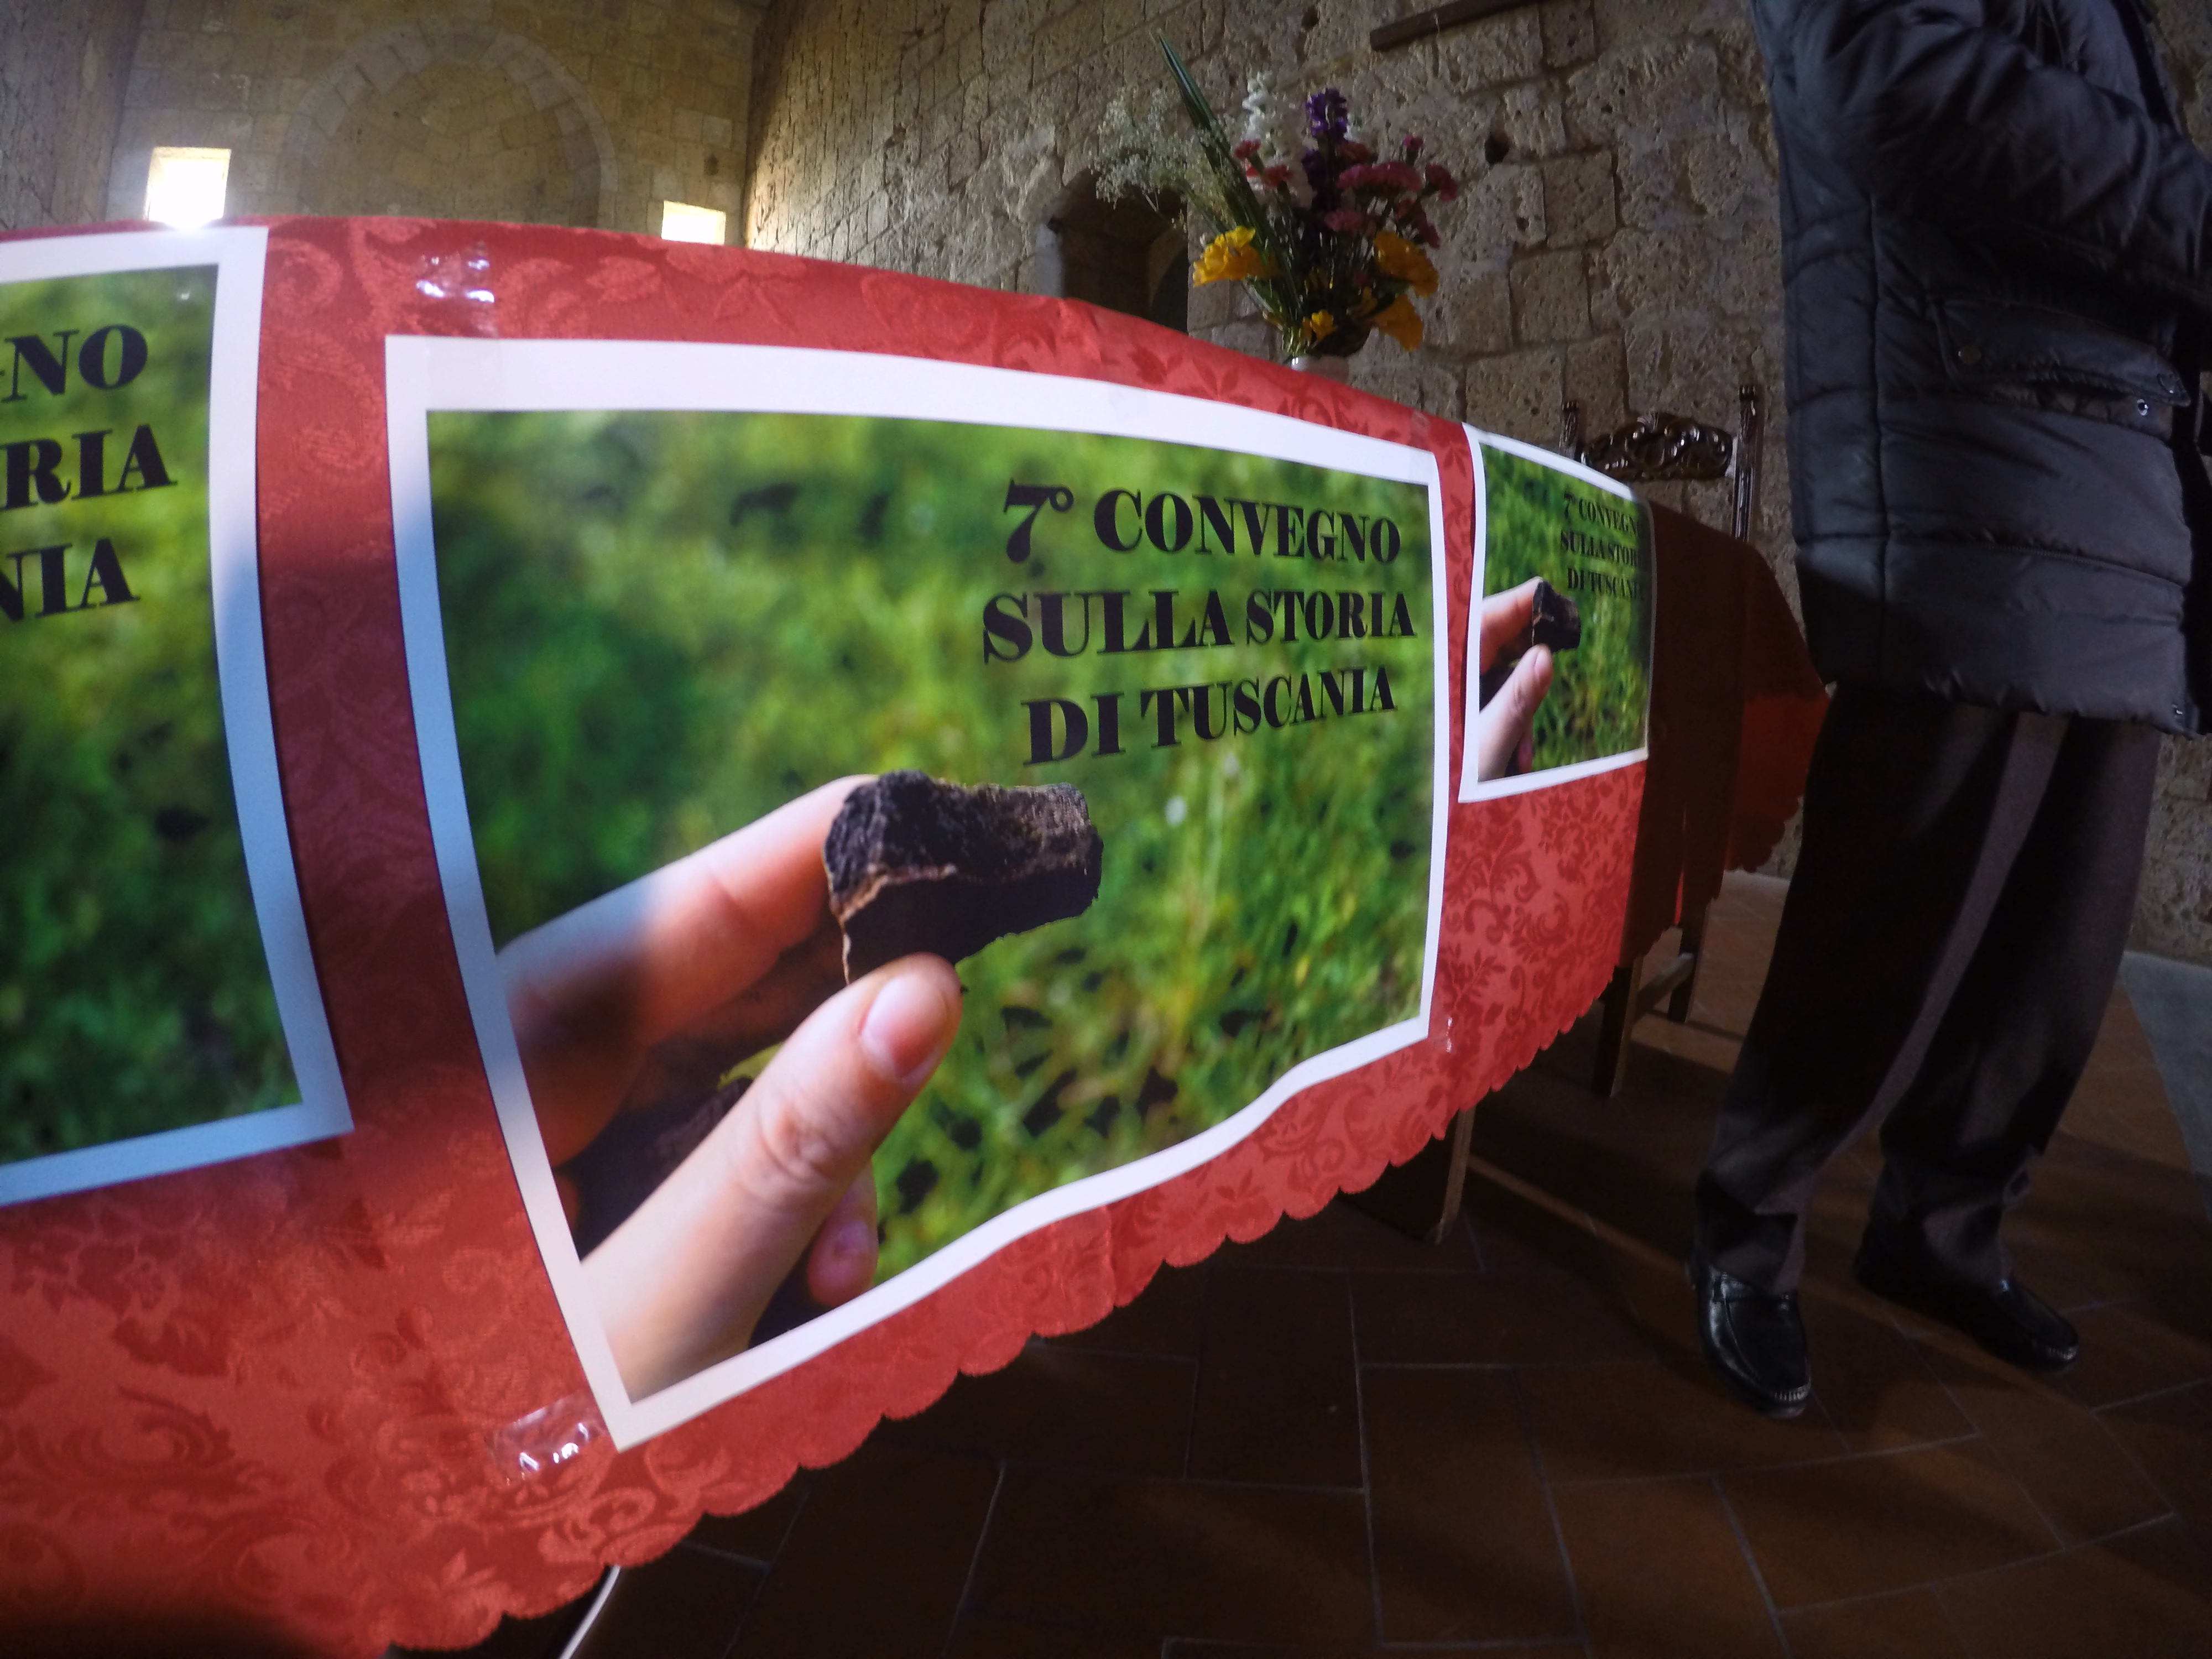 Il 7° Convegno di Tuscania, "Tuscania nell'Antichità" (ph Francesca Pontani)